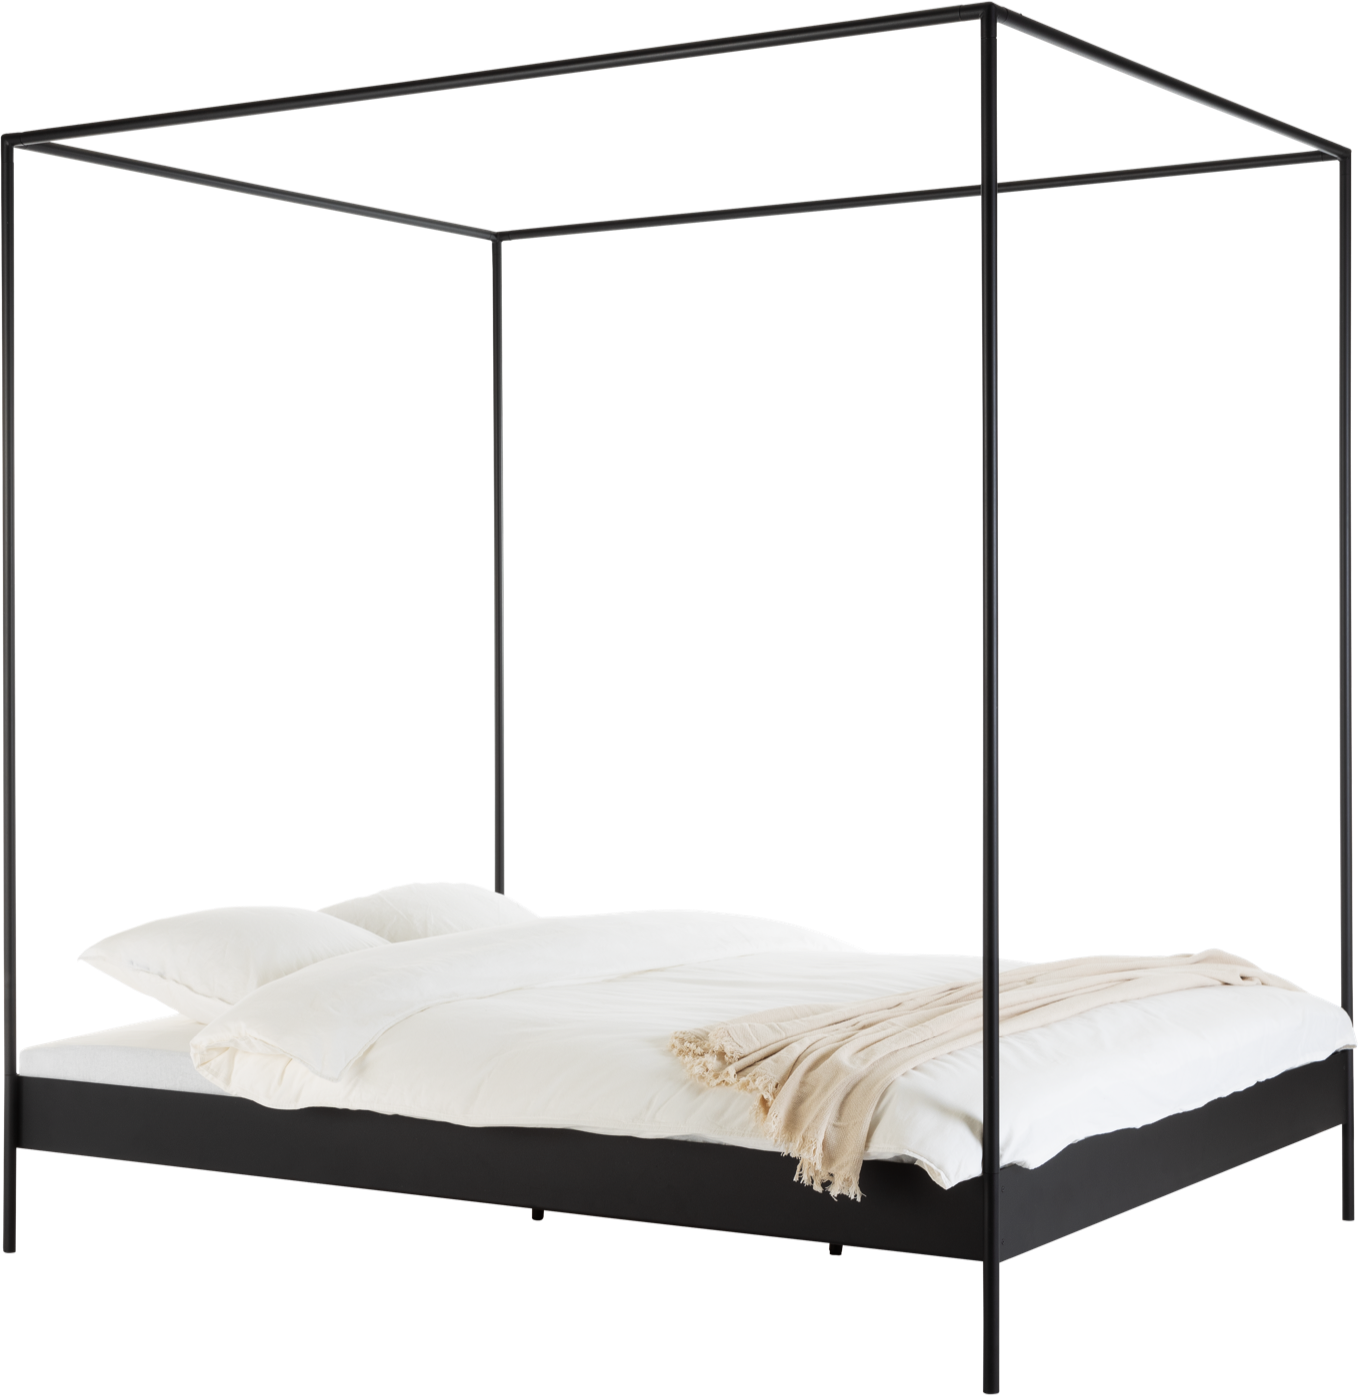 Eton Bett mit Lattenrost in Schwarz präsentiert im Onlineshop von KAQTU Design AG. Bett ist von Noo.ma